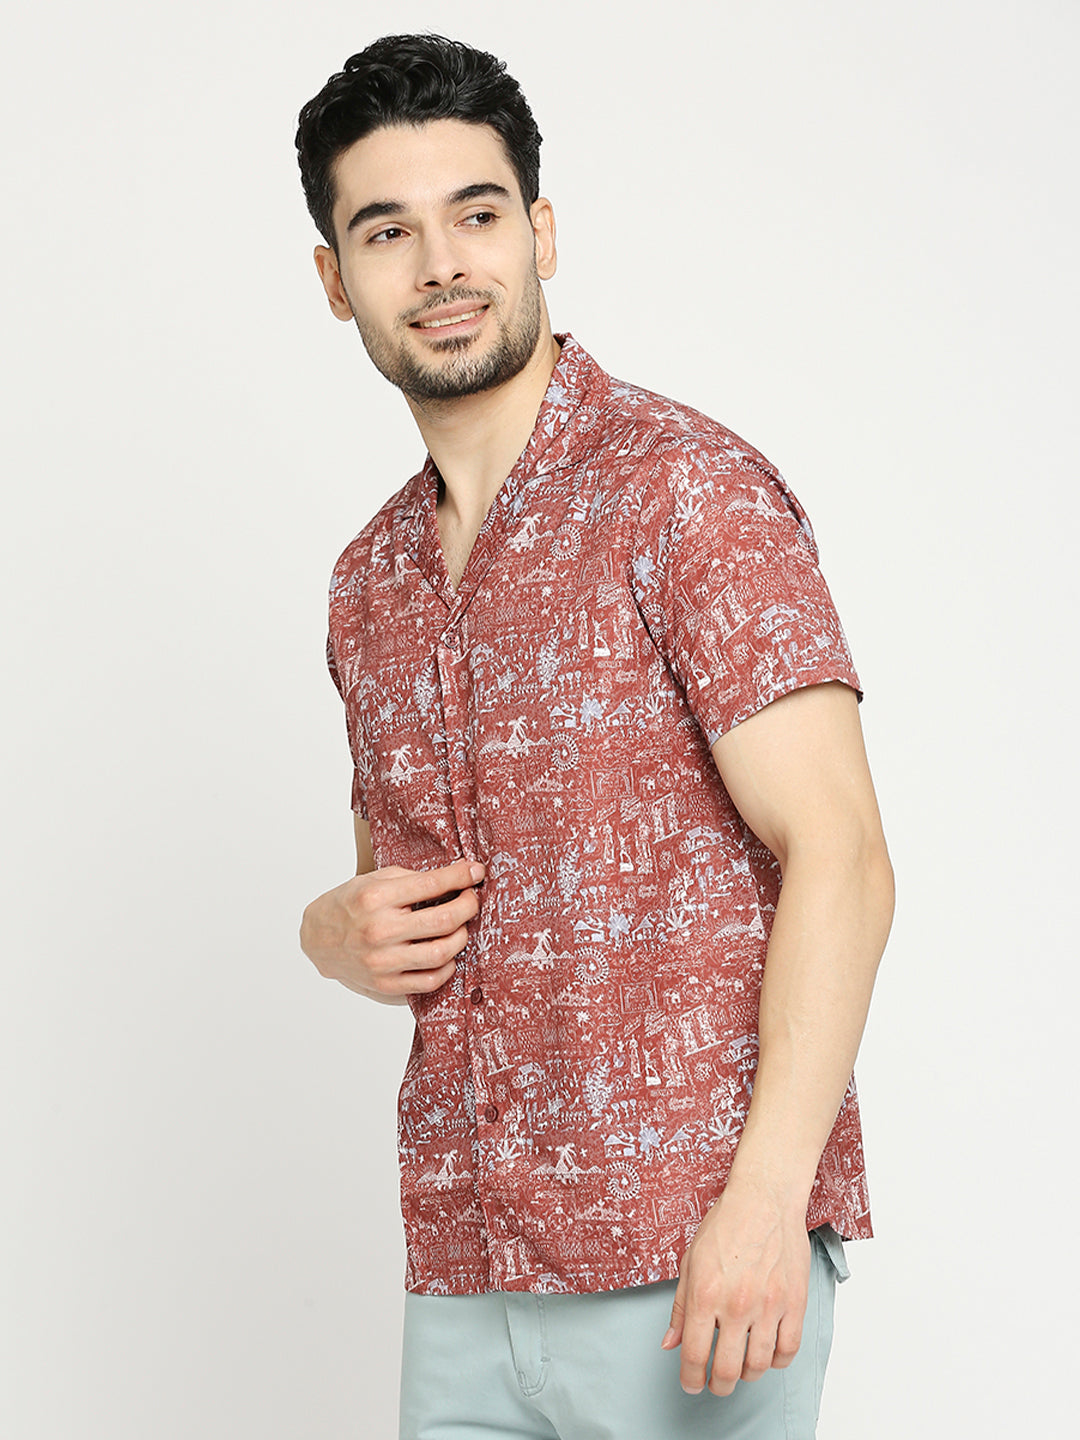 Buy Blamblack Men'S Printed Half Sleeves Regular Fit Cuban Collar Shirt